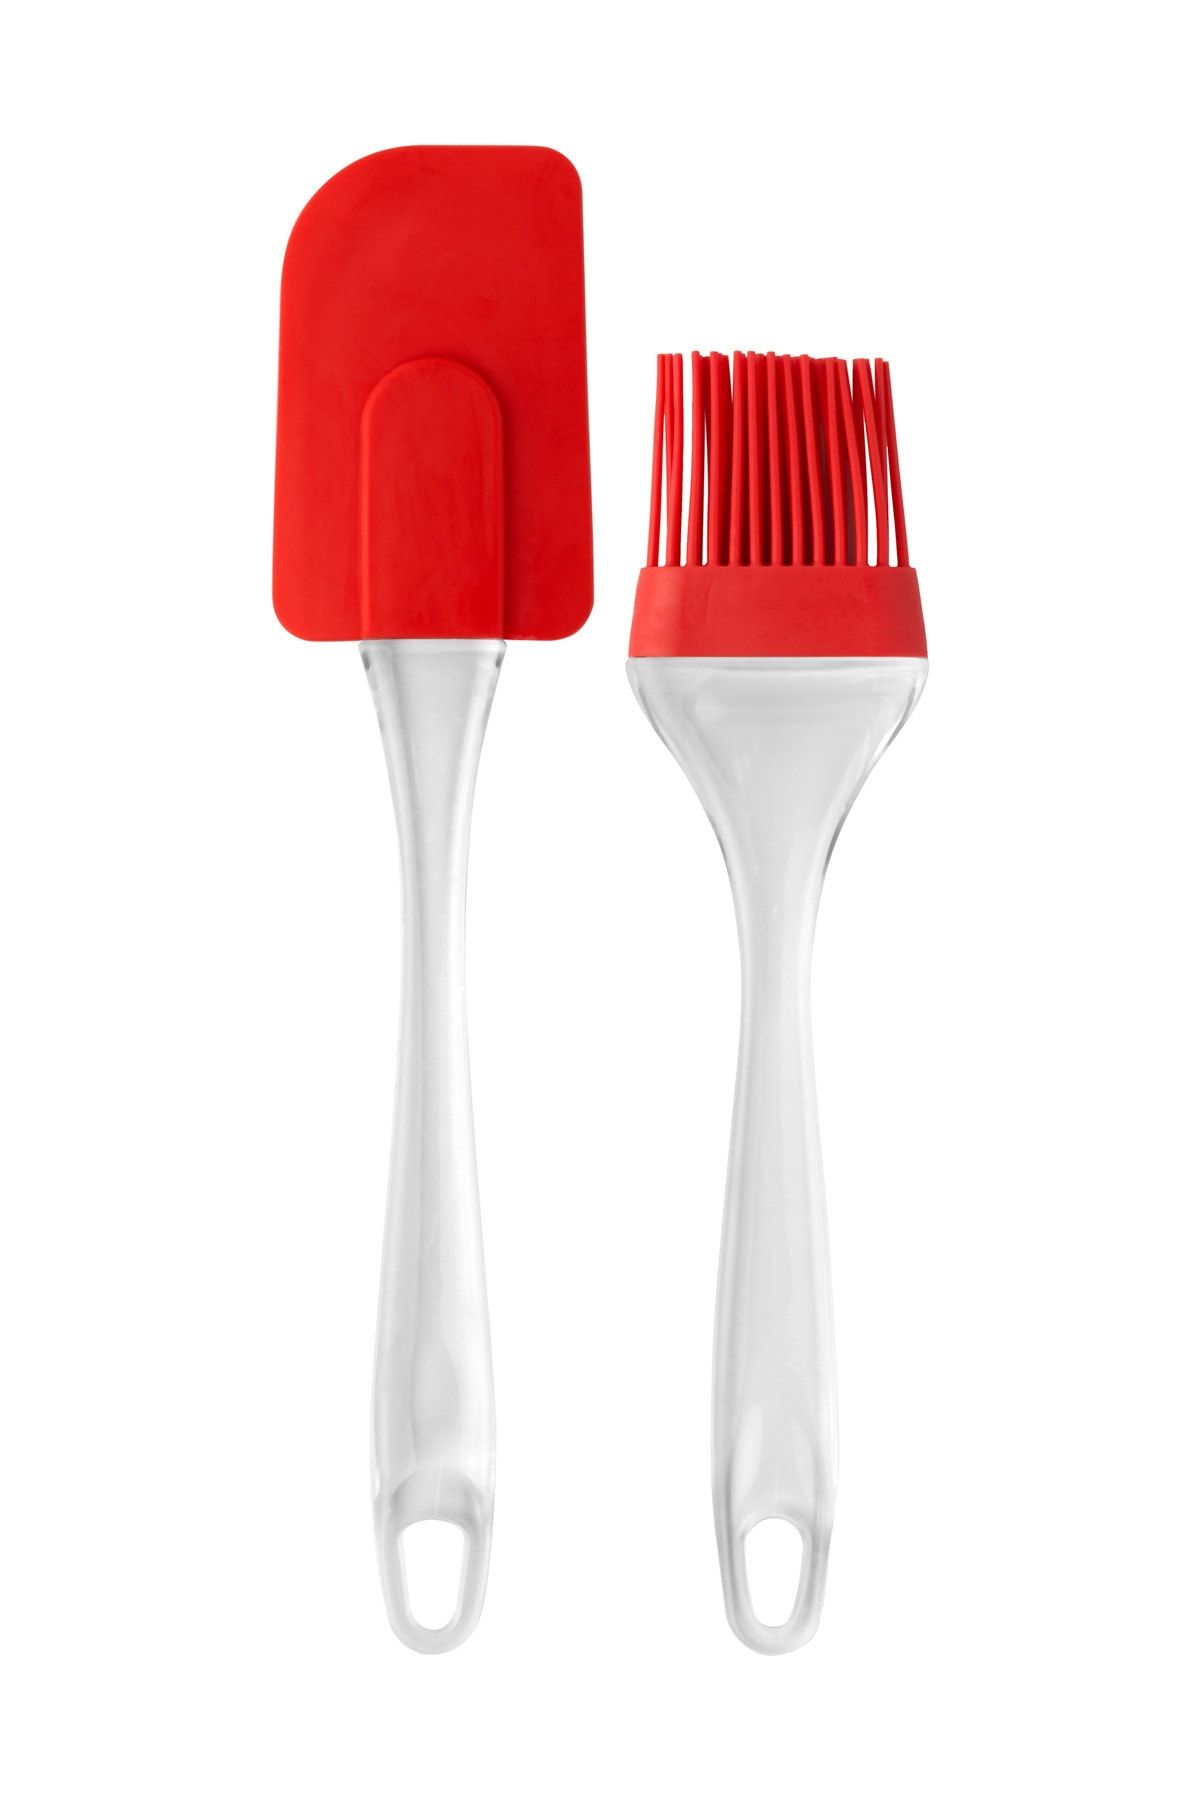 Kitchen Design Lab Kırmızı Akrilik Saplı Silikon Spatula Ve Yağ Fırçası Seti Yanmaz Yapışmaz Set, 24 Cm - 2 Adet